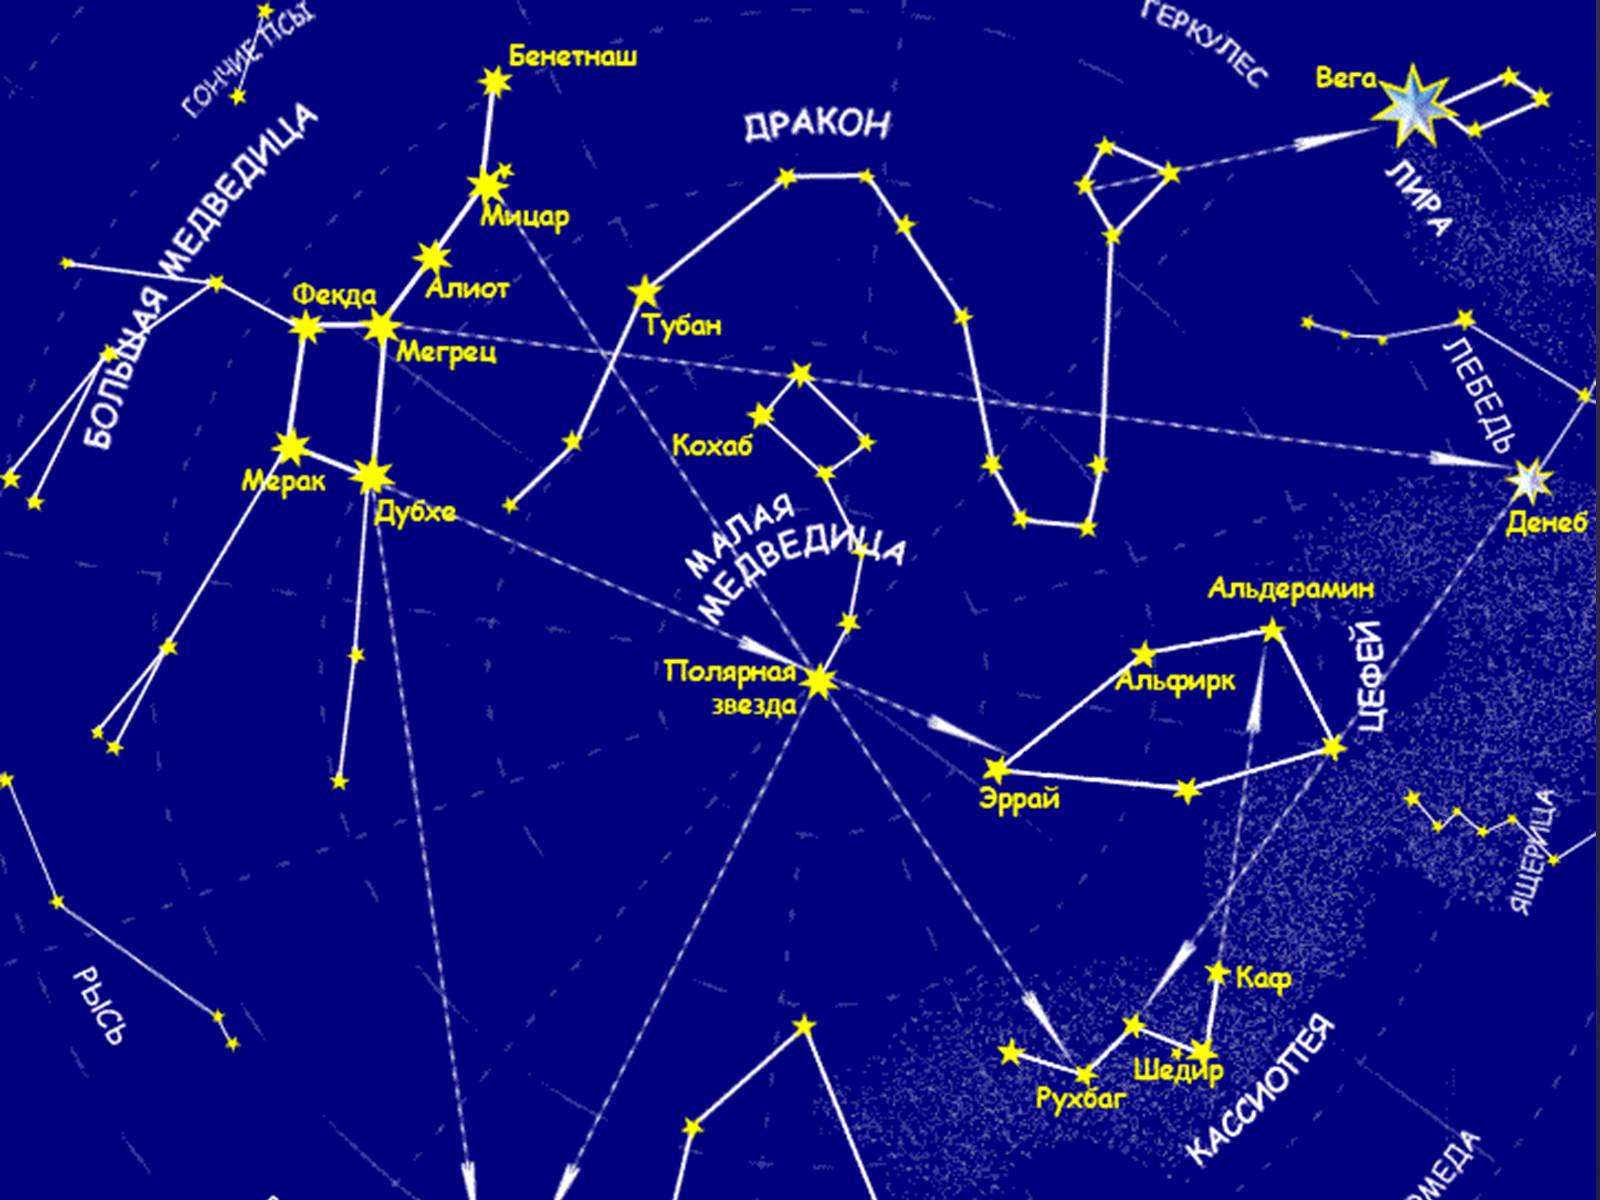 Карта звезд созвездия. Звездная карта созвездия. Карта звездного неба с названиями созвездий большая Медведица. Карта звёздного неба Северное полушарие большая Медведица. Околополярные незаходящие созвездия.